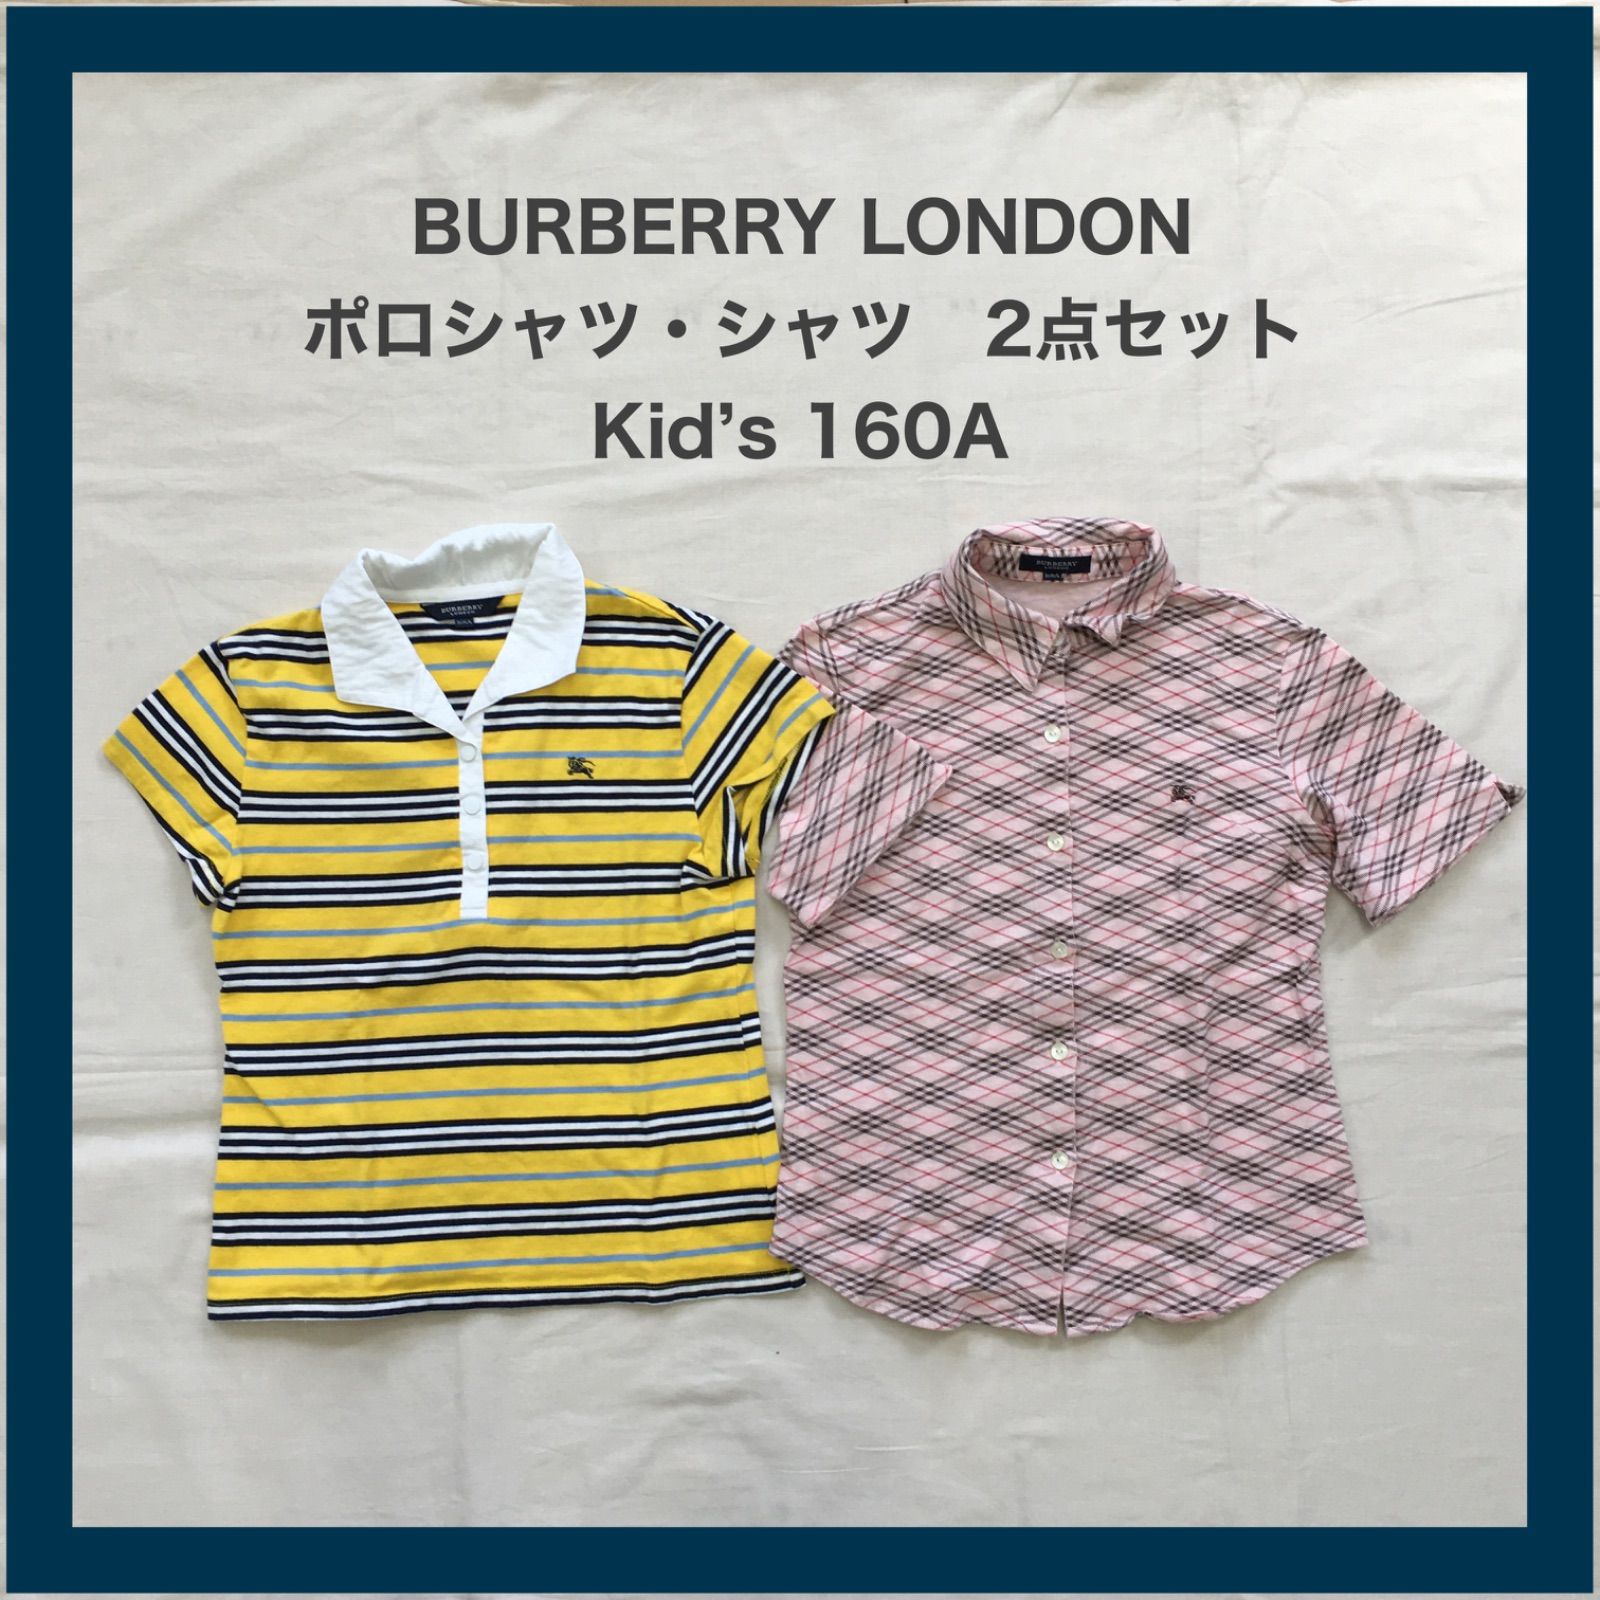 BURBERRY LONDON バーバリーロンドン チェック ポロシャツ シャツ 2点